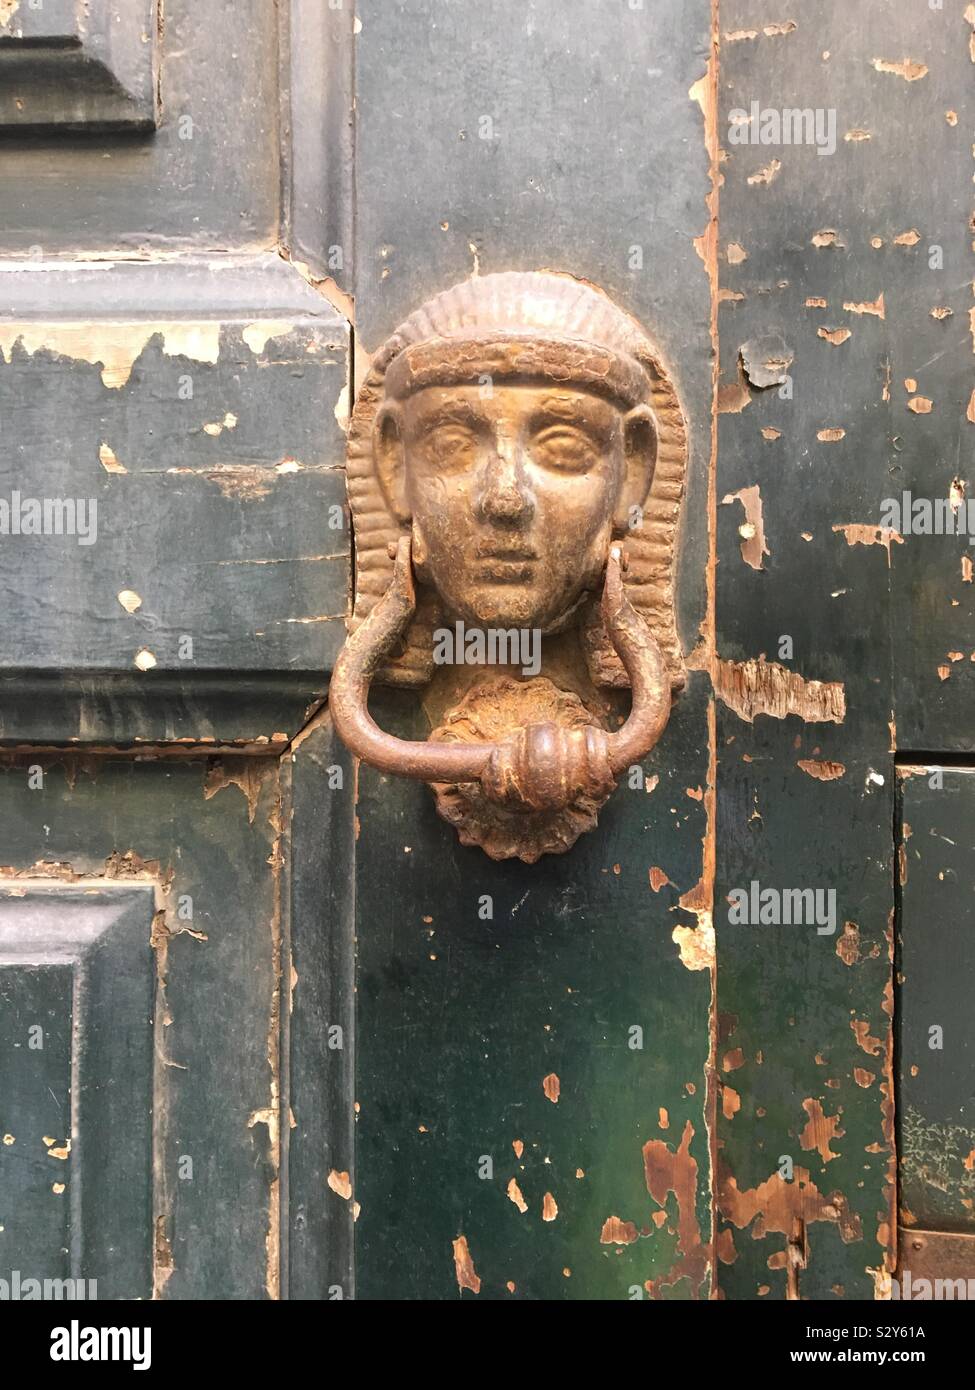 Egyptian style door knocker Stock Photo